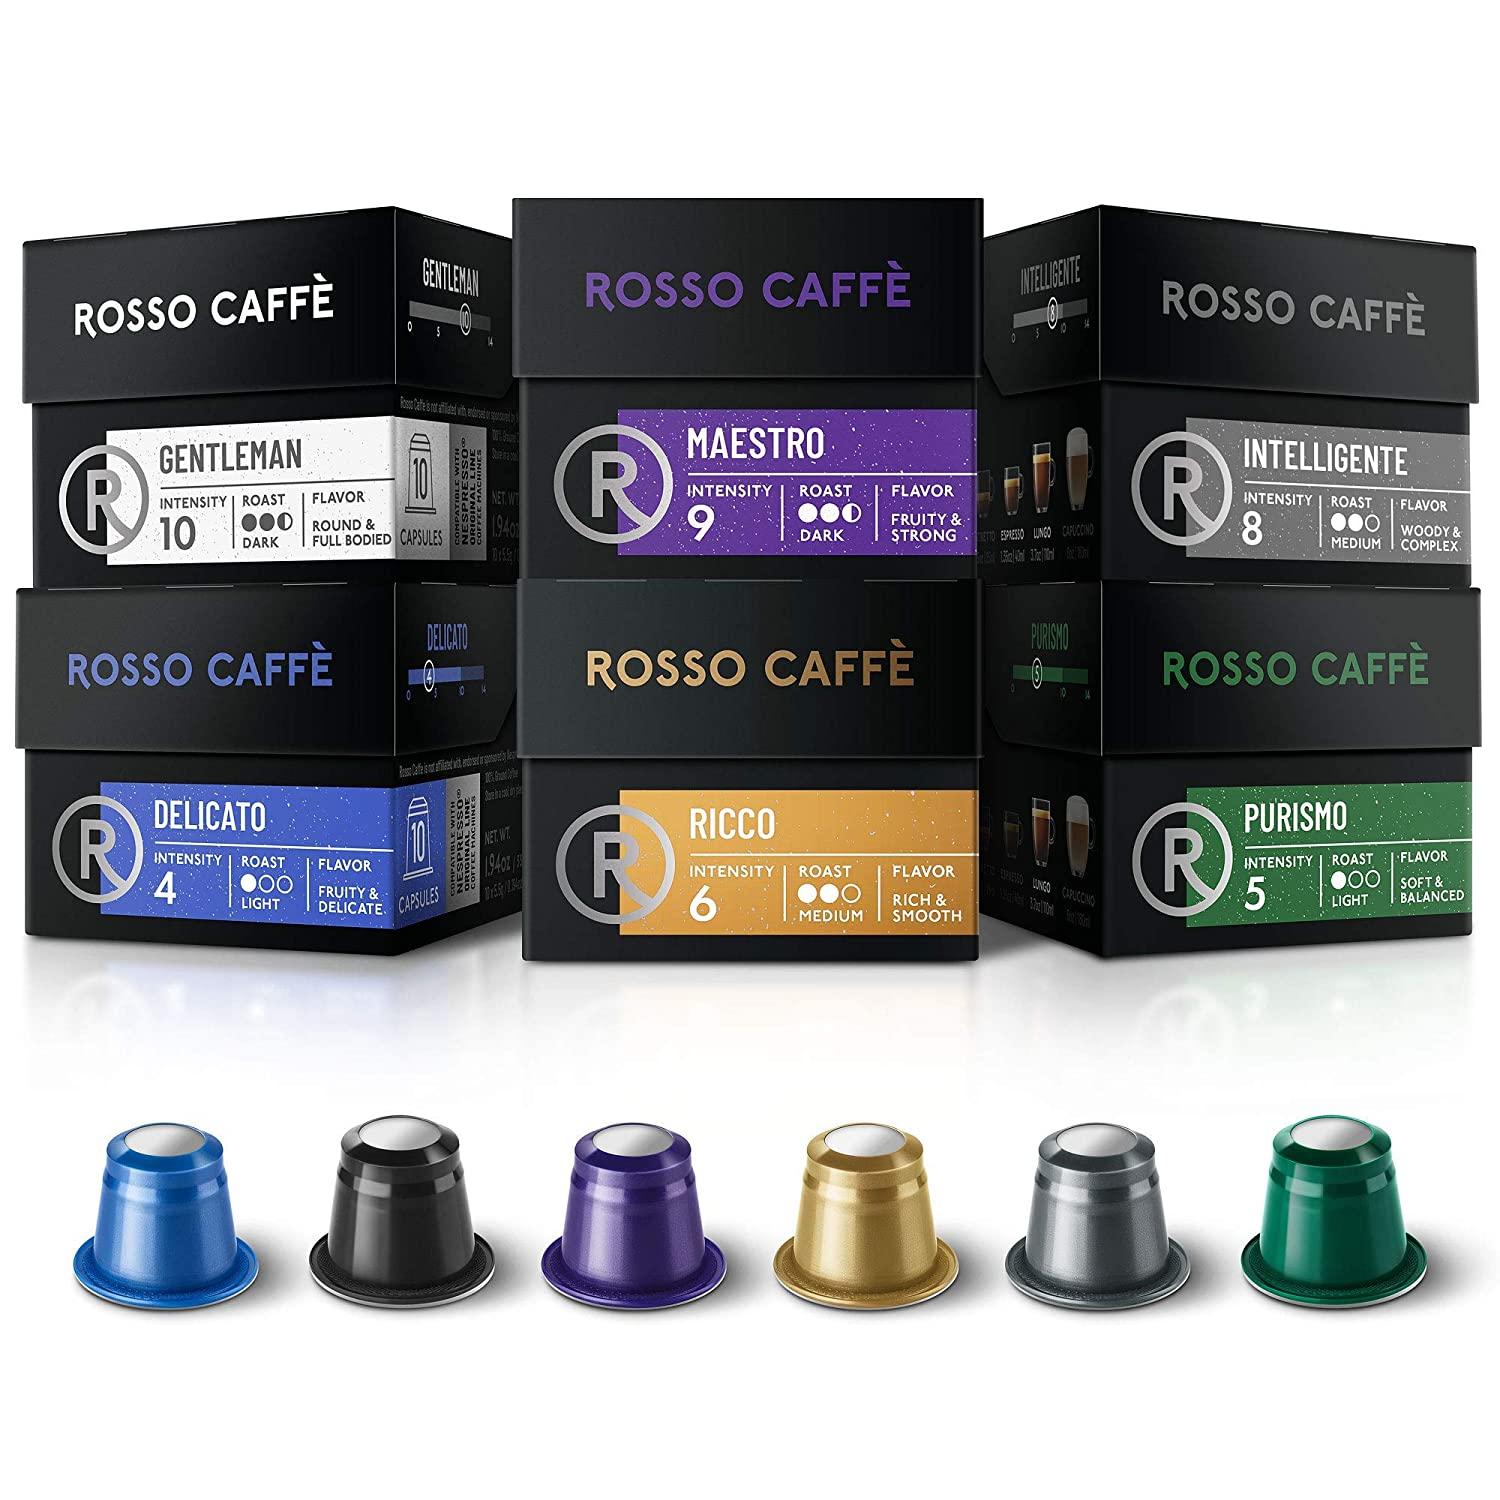 60 Rosso Espresso Coffee Nespresso Pods for 15.37 Shipped